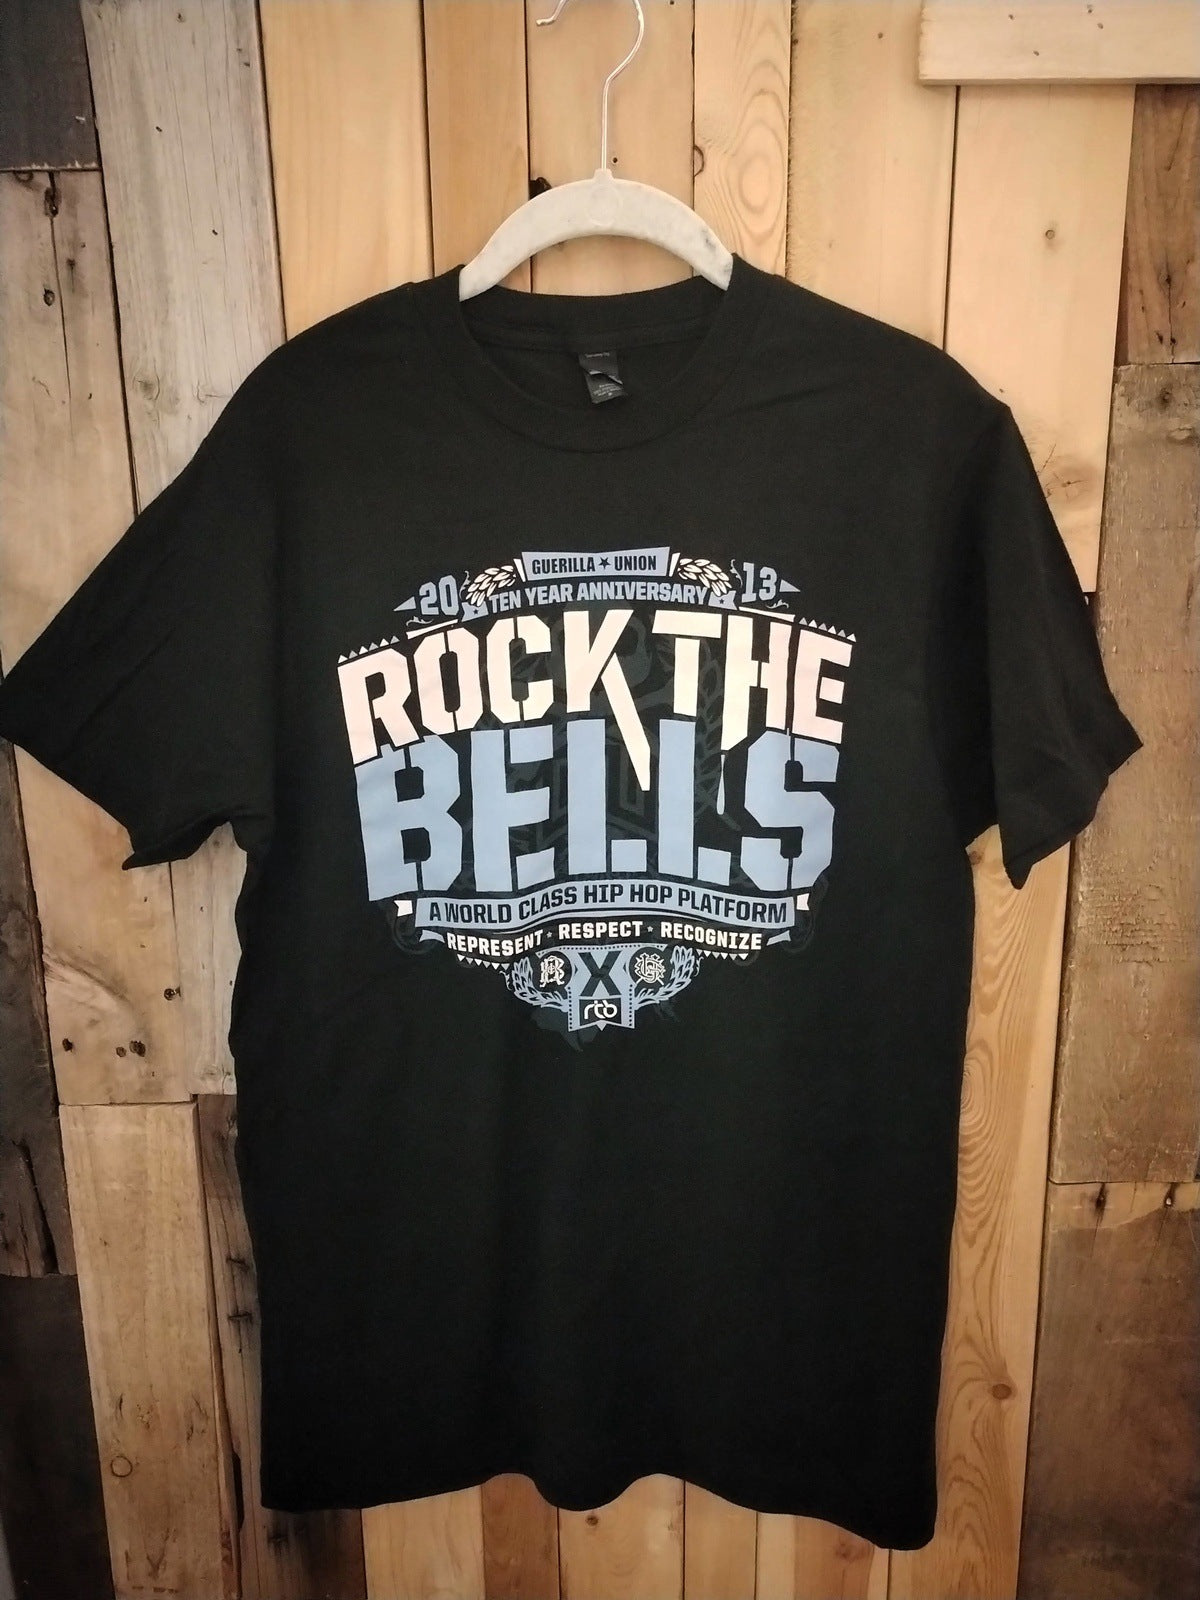 2013 Rock The Bells Official Festival T Shirt Size Medium. NEW! Never Worn!